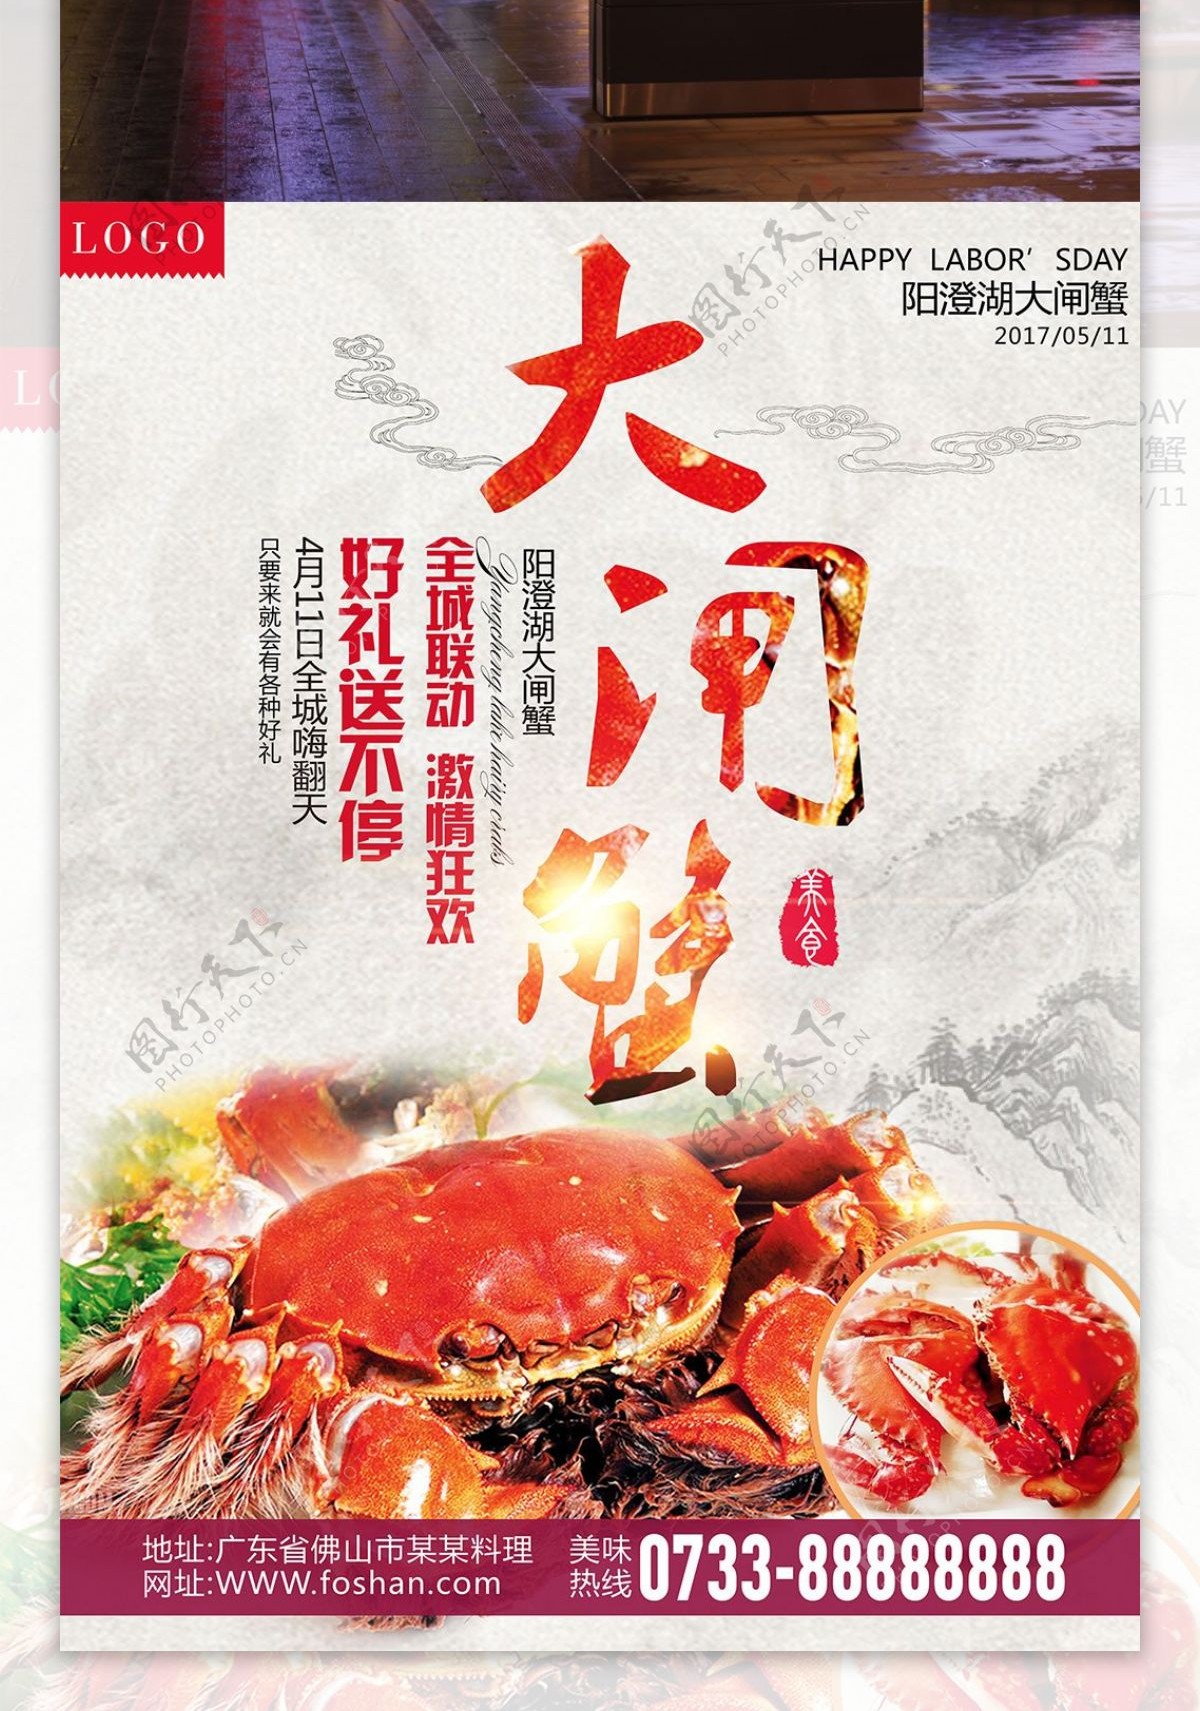 海鲜大闸蟹美味宣传海报